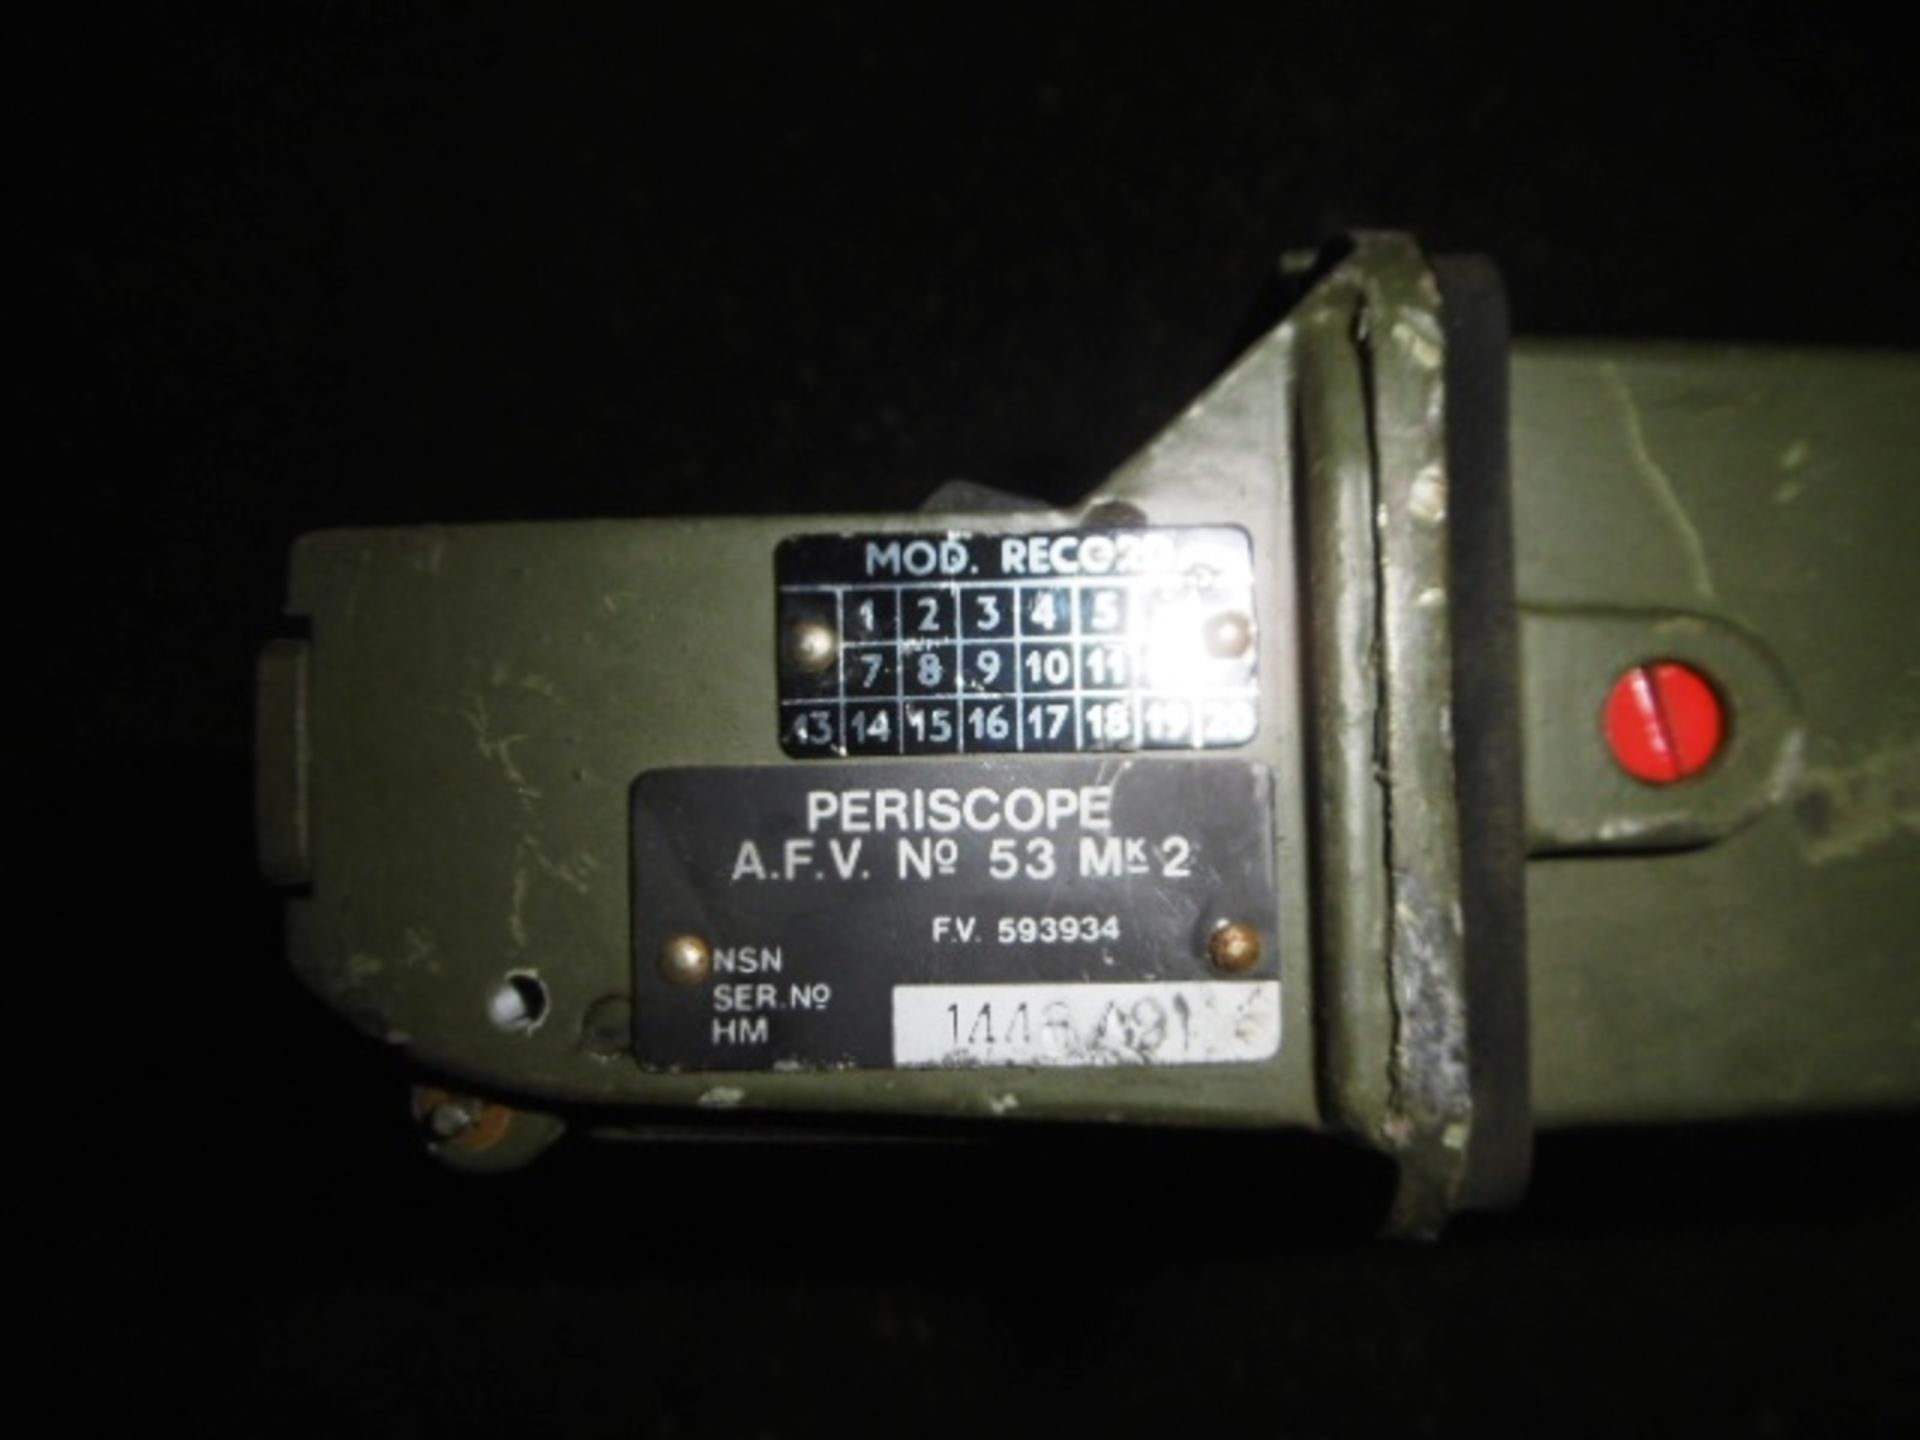 10 x AFV No 53 Mk 2 Periscopes - Image 4 of 4